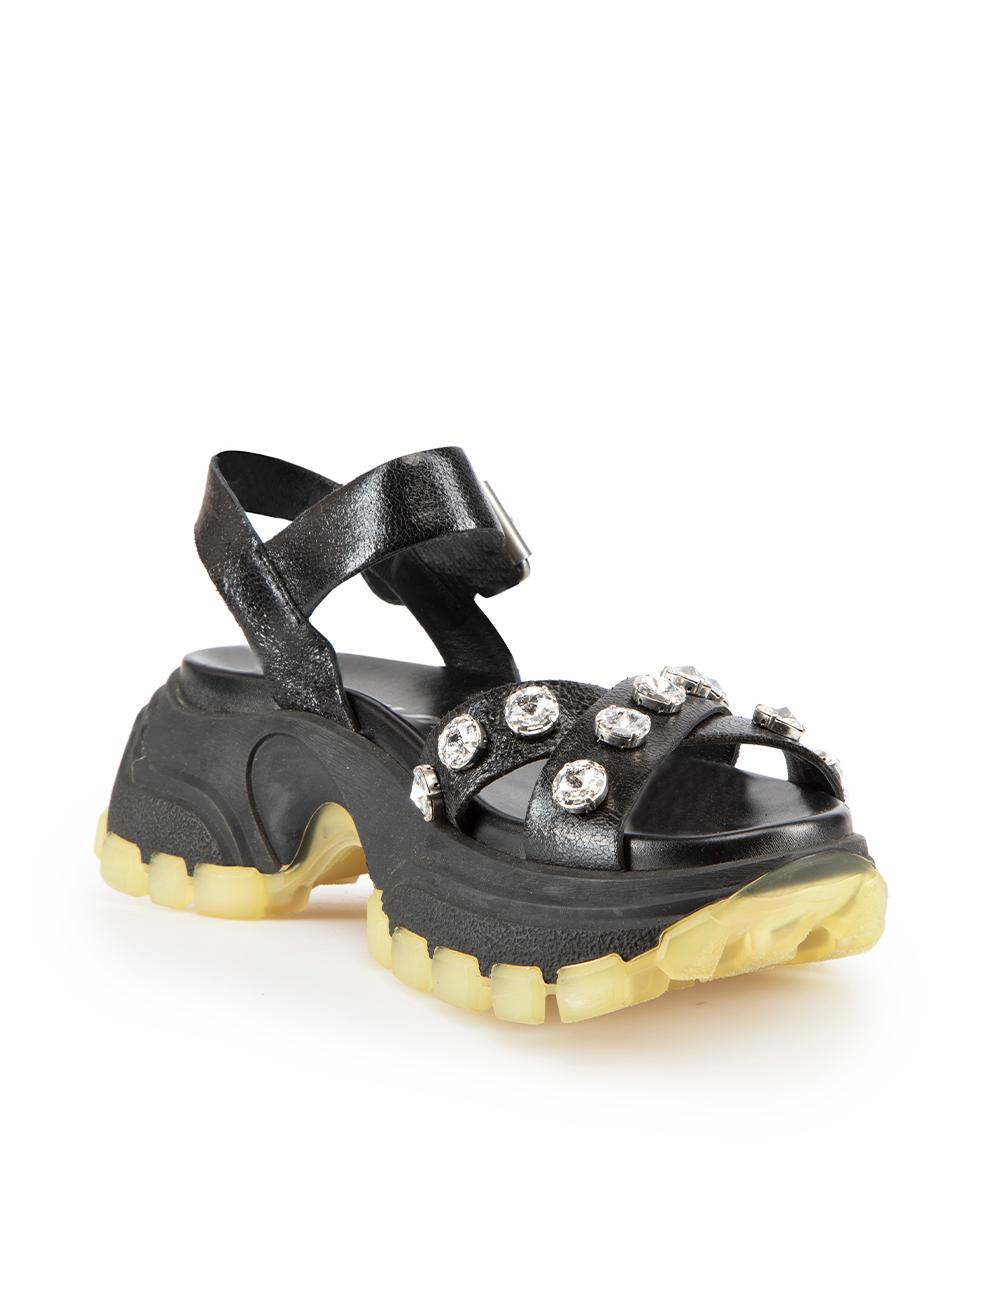 CONDITION est Jamais porté. Aucune usure visible des sandales n'est évidente sur ce nouvel article de revente de designer Miu Miu. Ces chaussures sont livrées avec leur sac à poussière d'origine.

Détails
Noir
Cuir
Sandales
Plate-forme épaisse
Bout